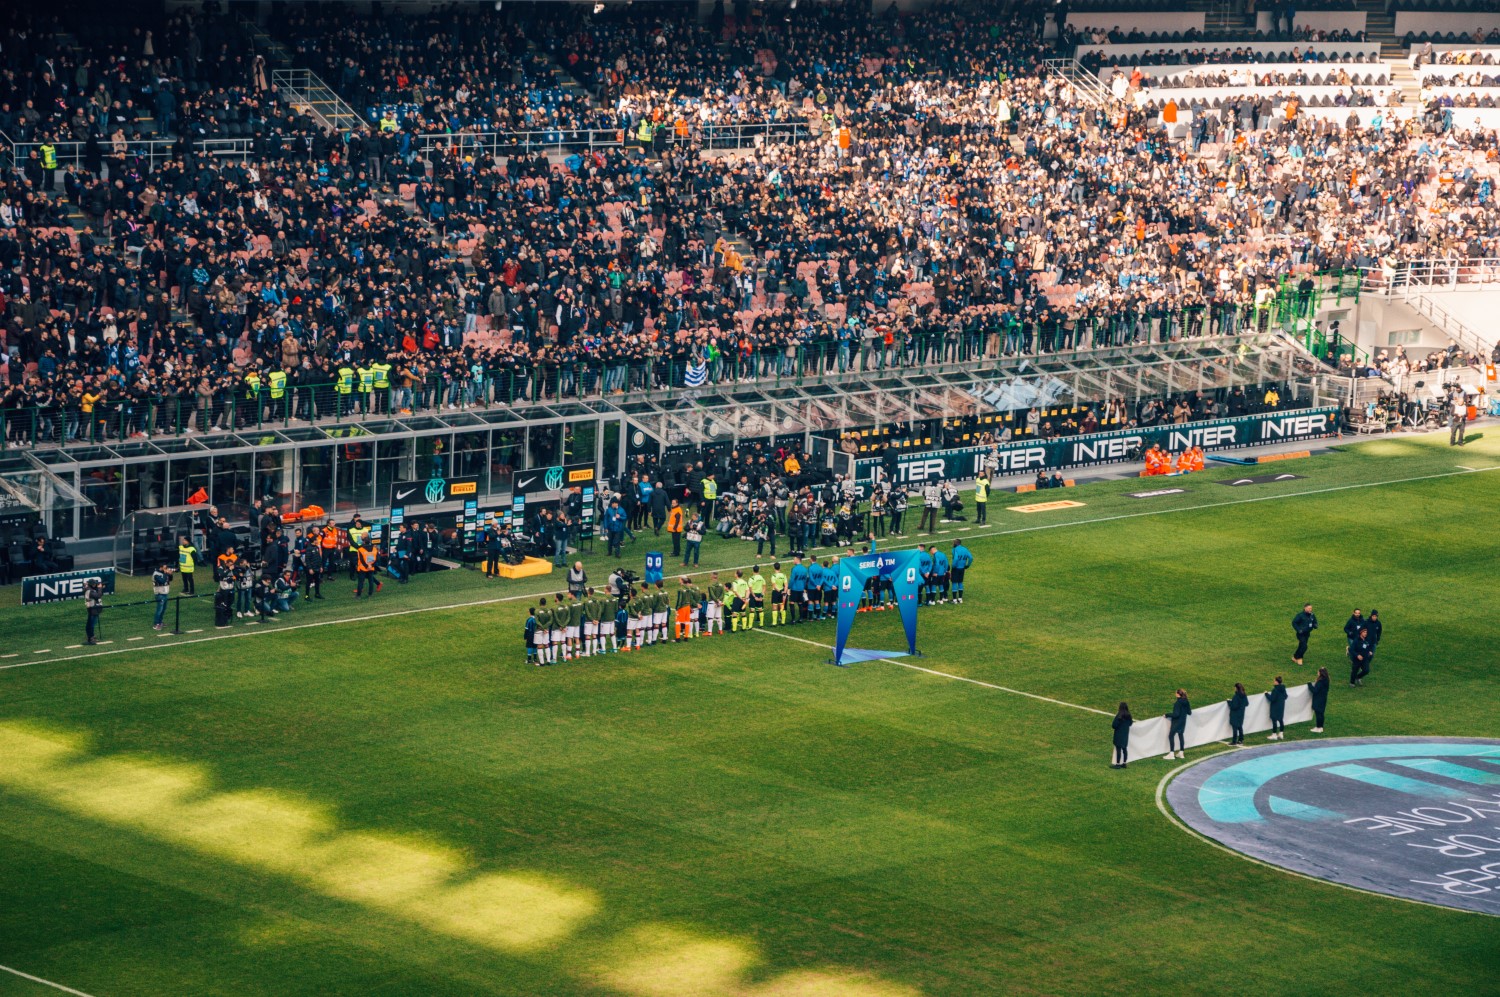 Wyjazd na mecz Serie A, Włochy - bele kaj, blog podróżniczy po śląsku